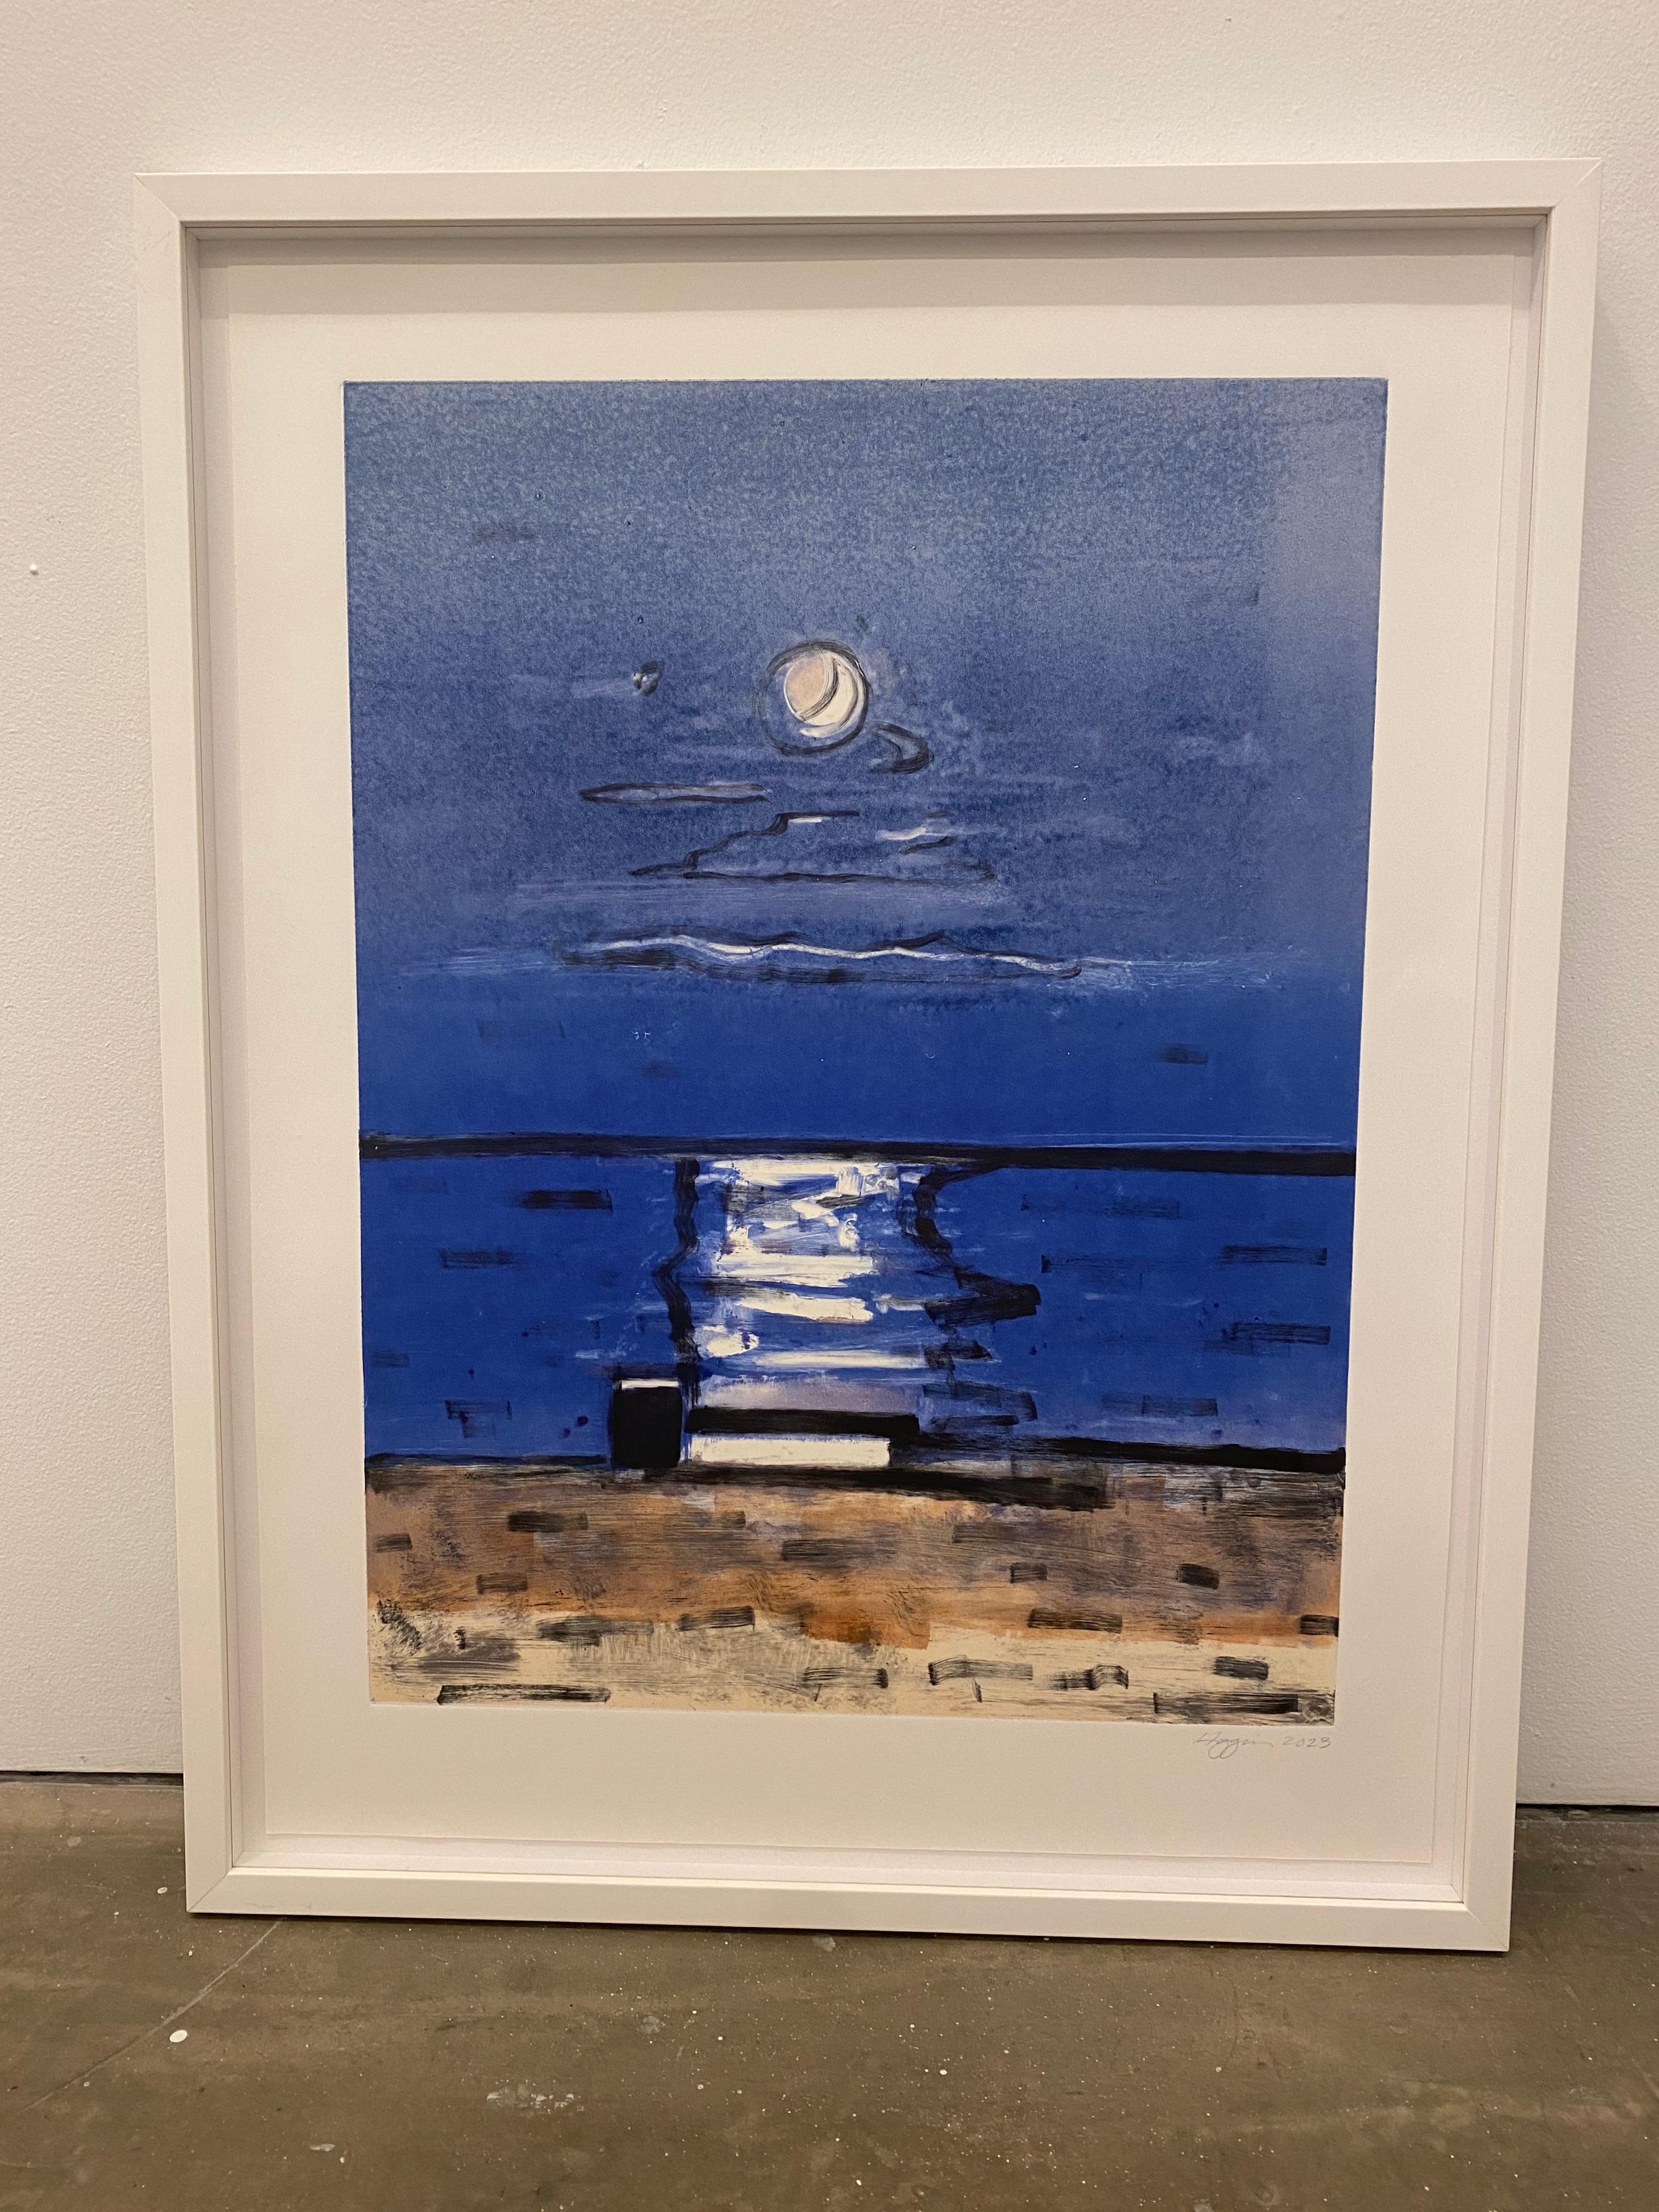 Moonlight on Water #4 - Painting by Elizabeth Higgins